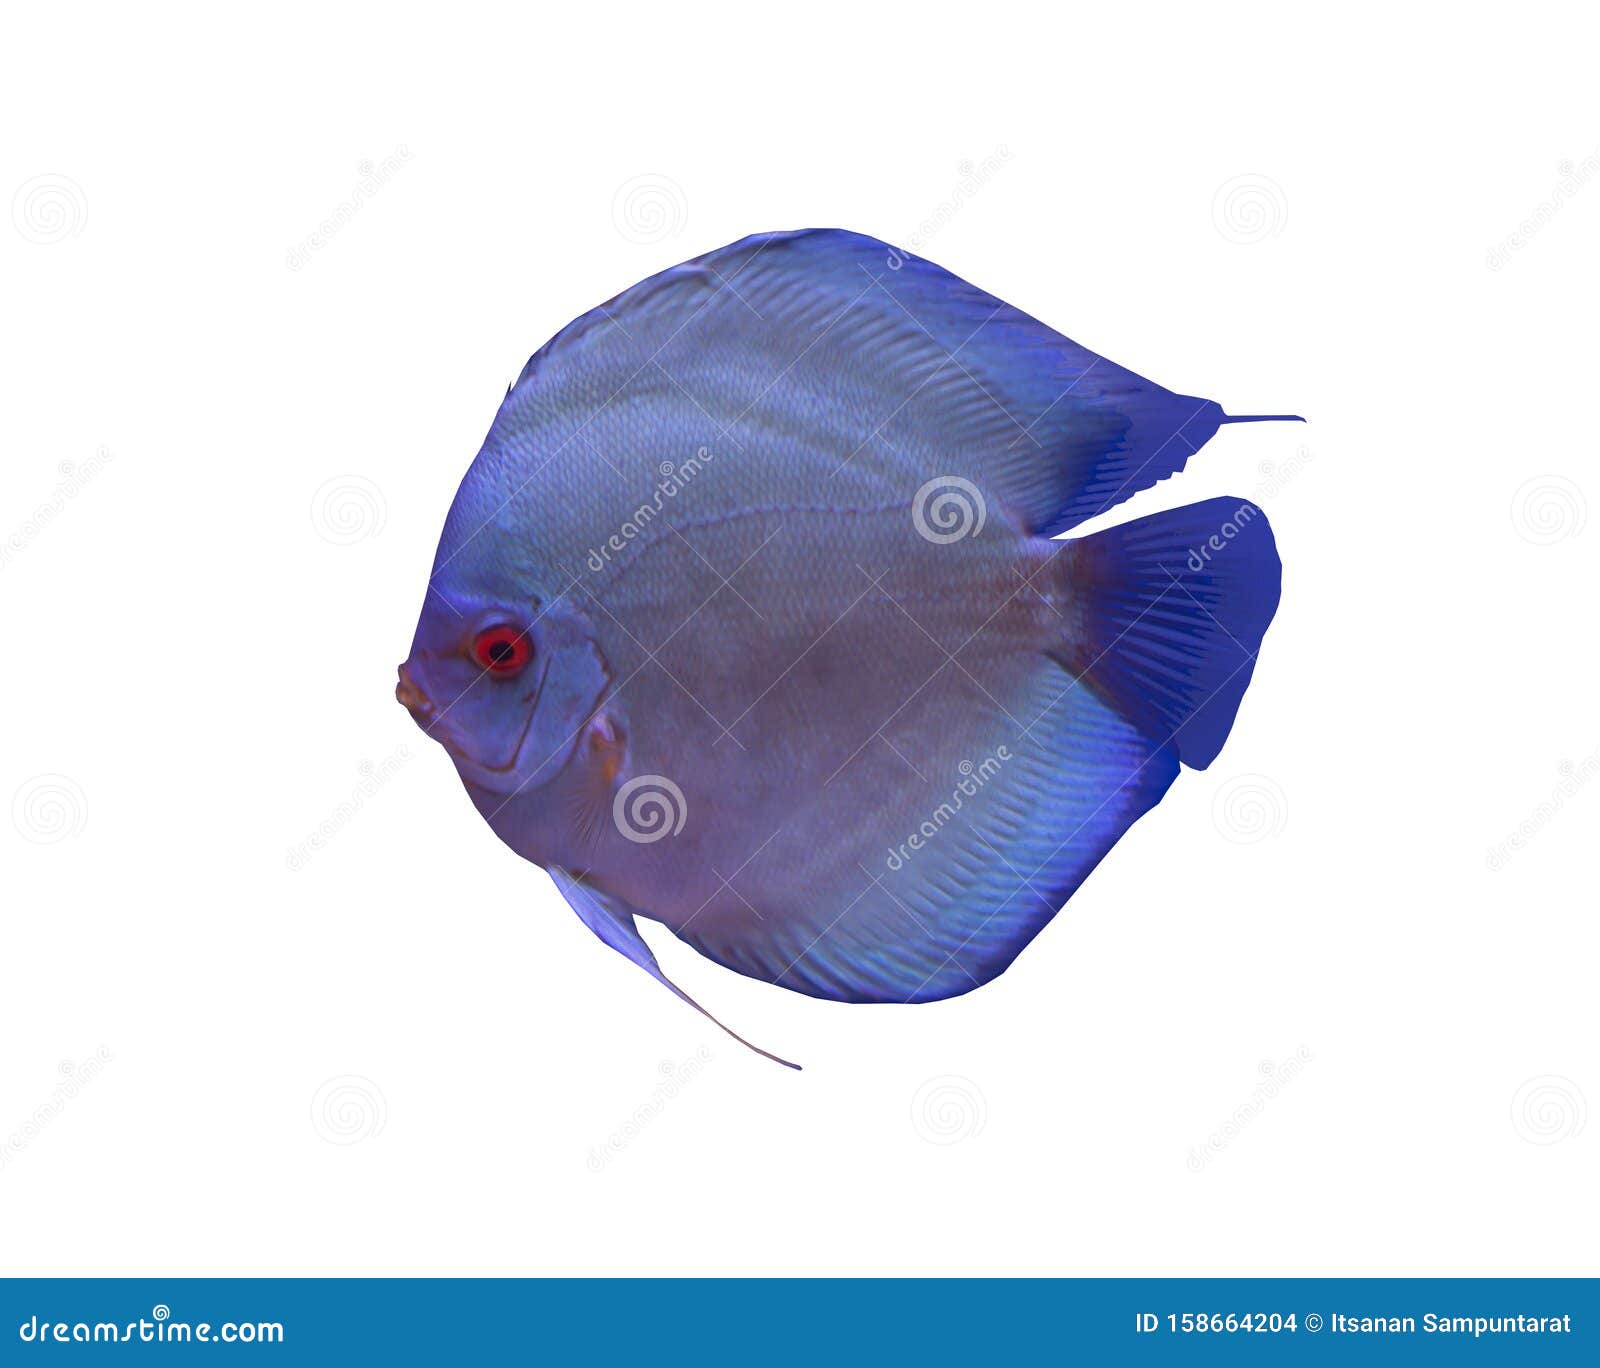 Дискусная рыба на белом фоне. Рыба с голубым бриллиантом, изолированная на белом фоне